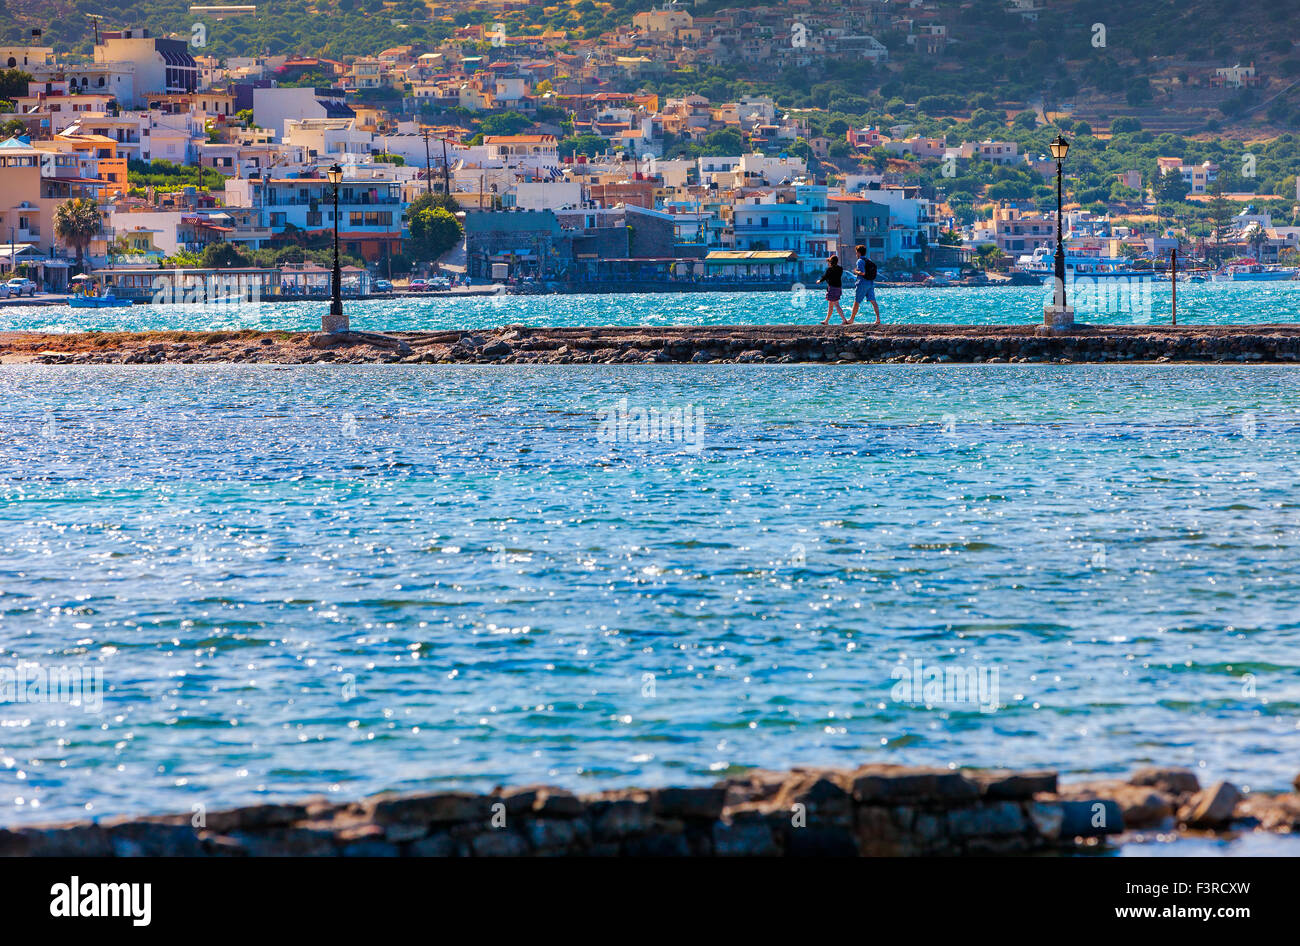 Elounda. Elounda - villaggio e resort in Grecia nella parte orientale di Creta. Elounda, Creta, Grecia Foto Stock